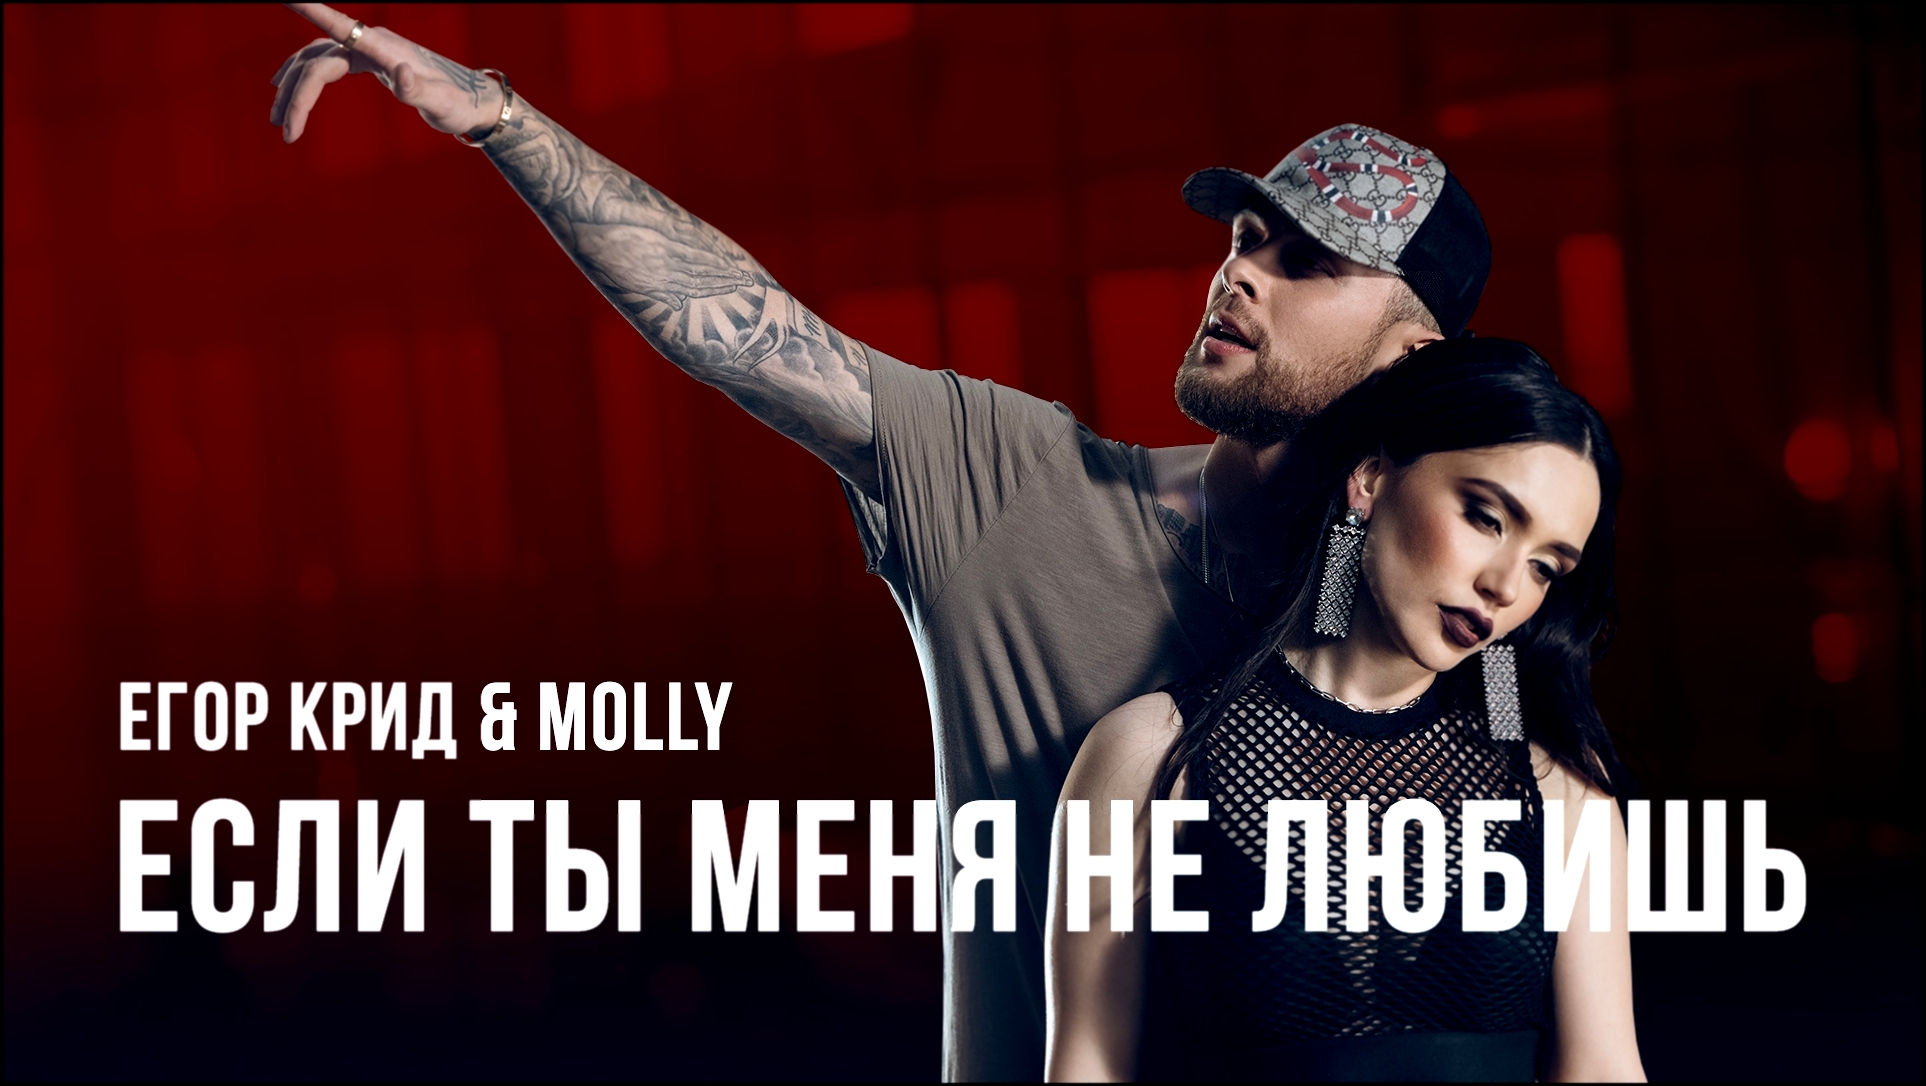 Музыкальный видеоклип Егор Крид & MOLLY - Если ты меня не любишь (премьера клипа, 2017) 